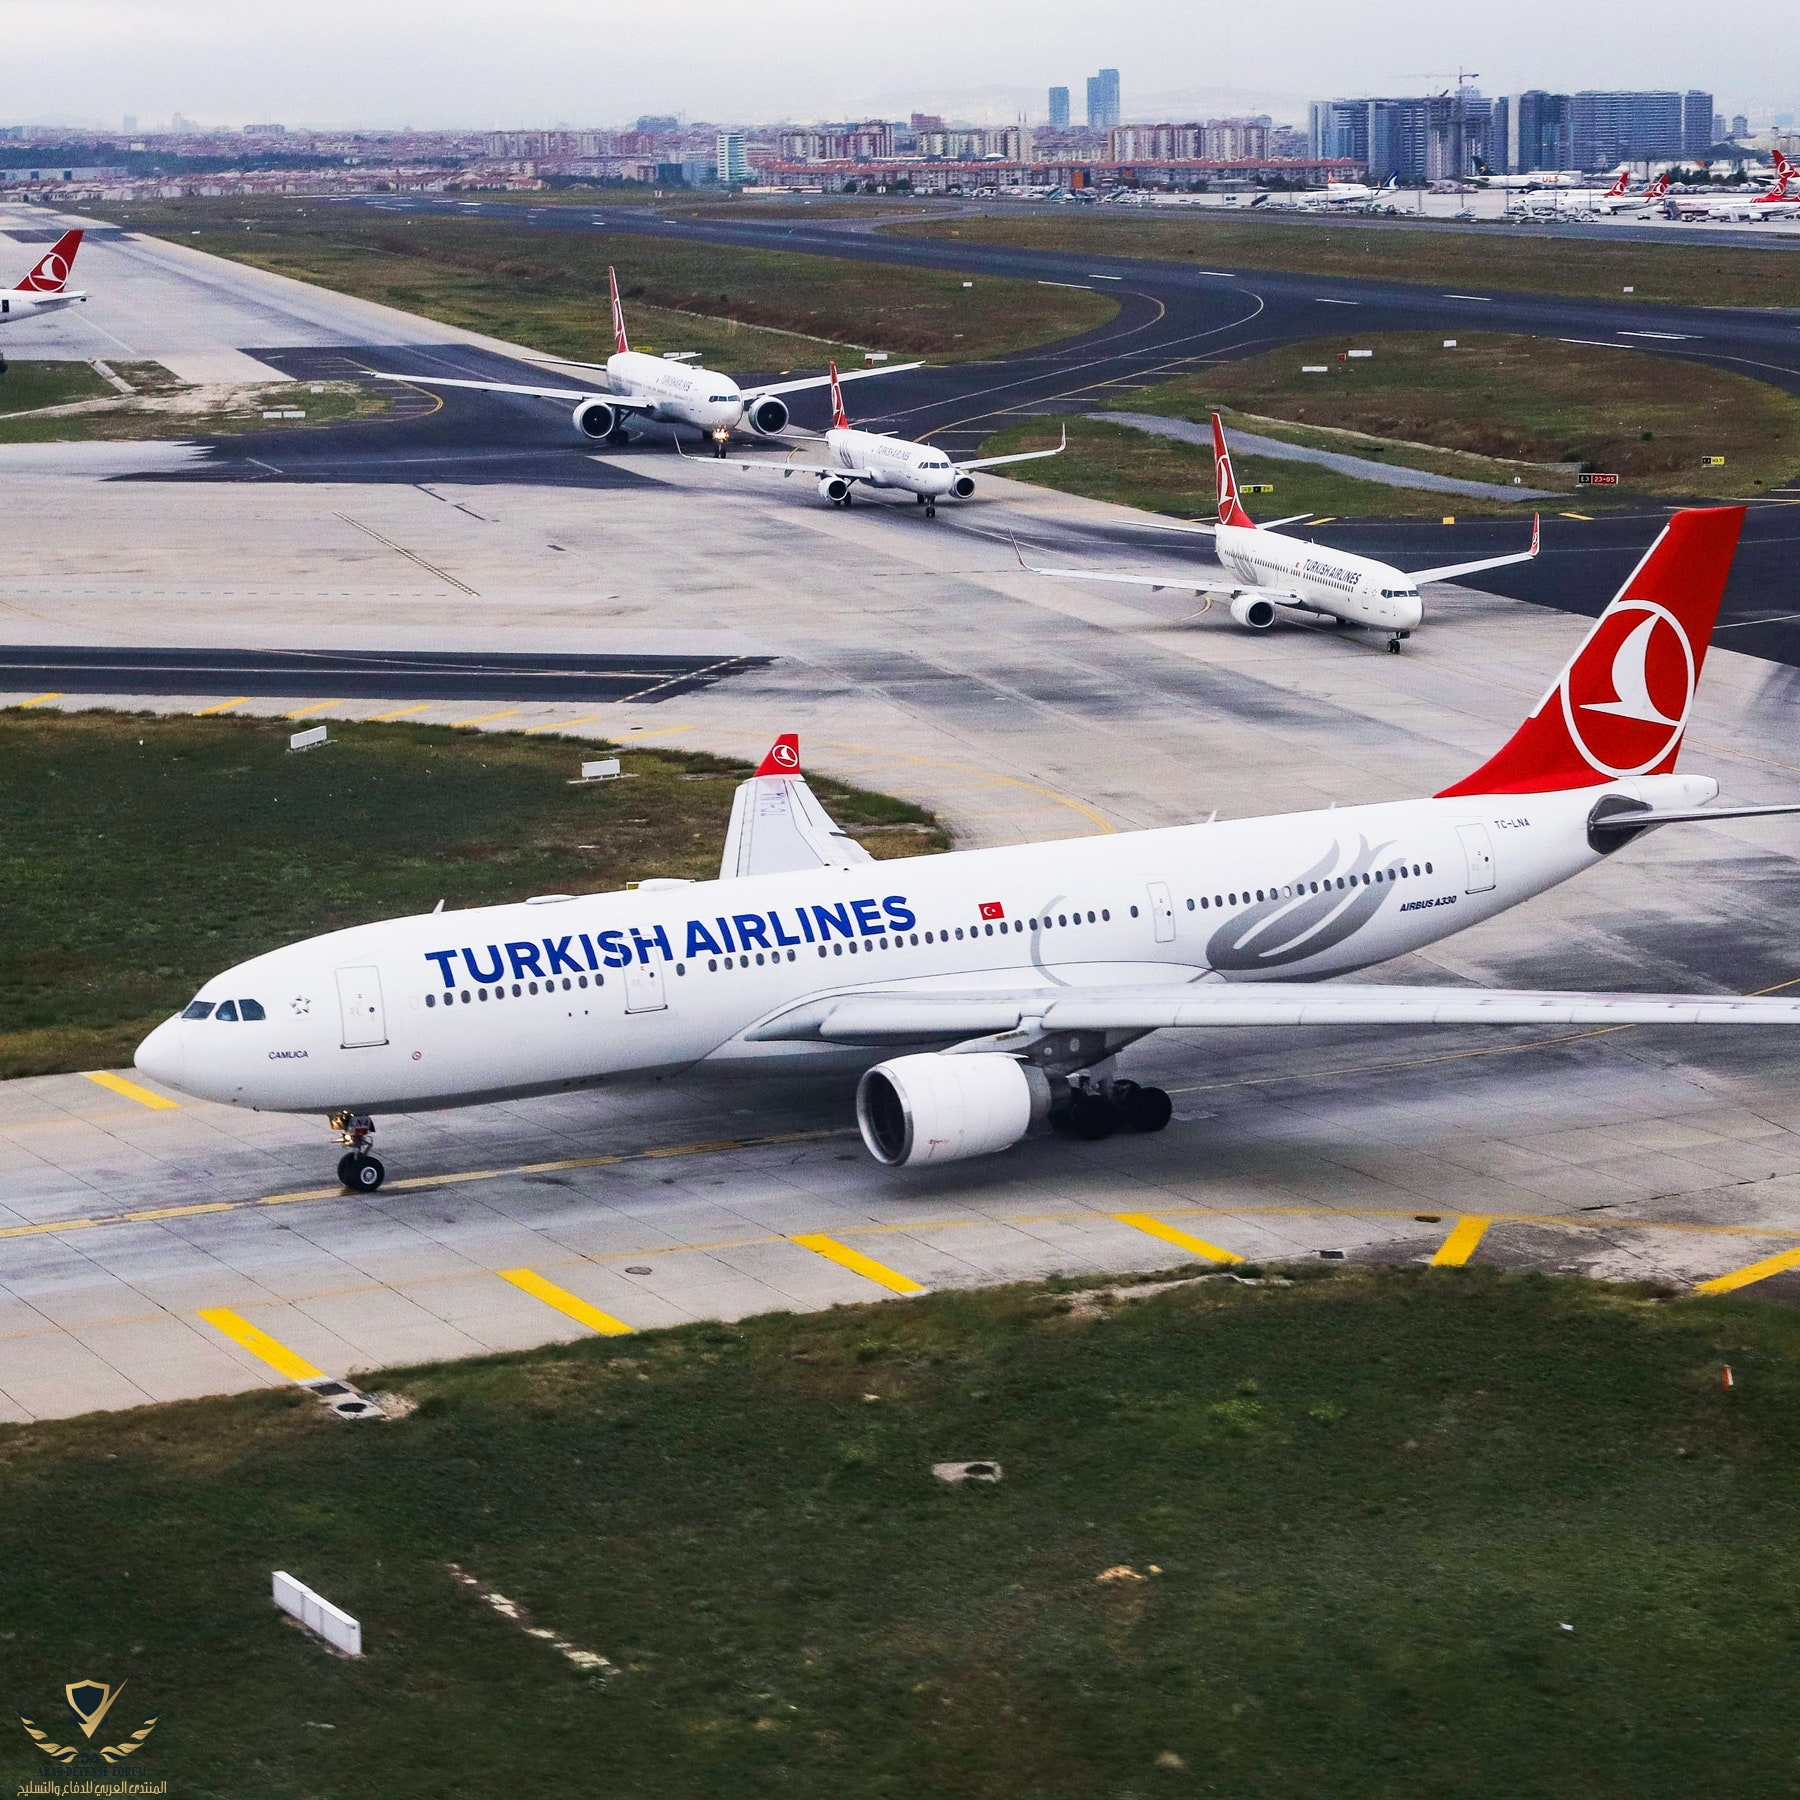 TurkishAirlines-1051845884.jpg